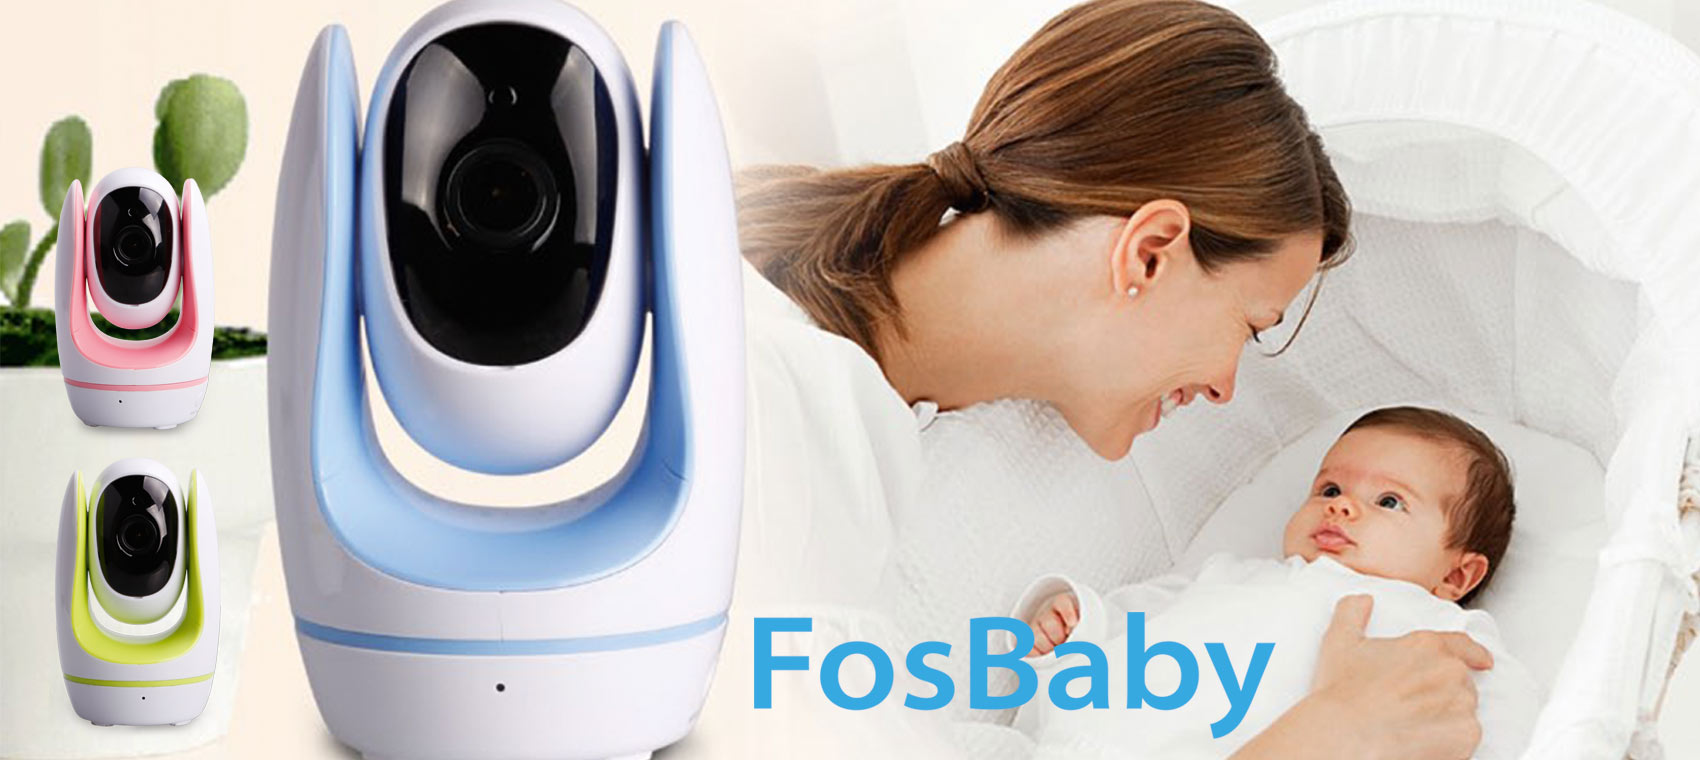 Foscam - camera sản xuất tại Trung Quốc, bán chạy hàng đầu tại Mỹ & EU Foscam_Wordpress_Slide_FosBaby